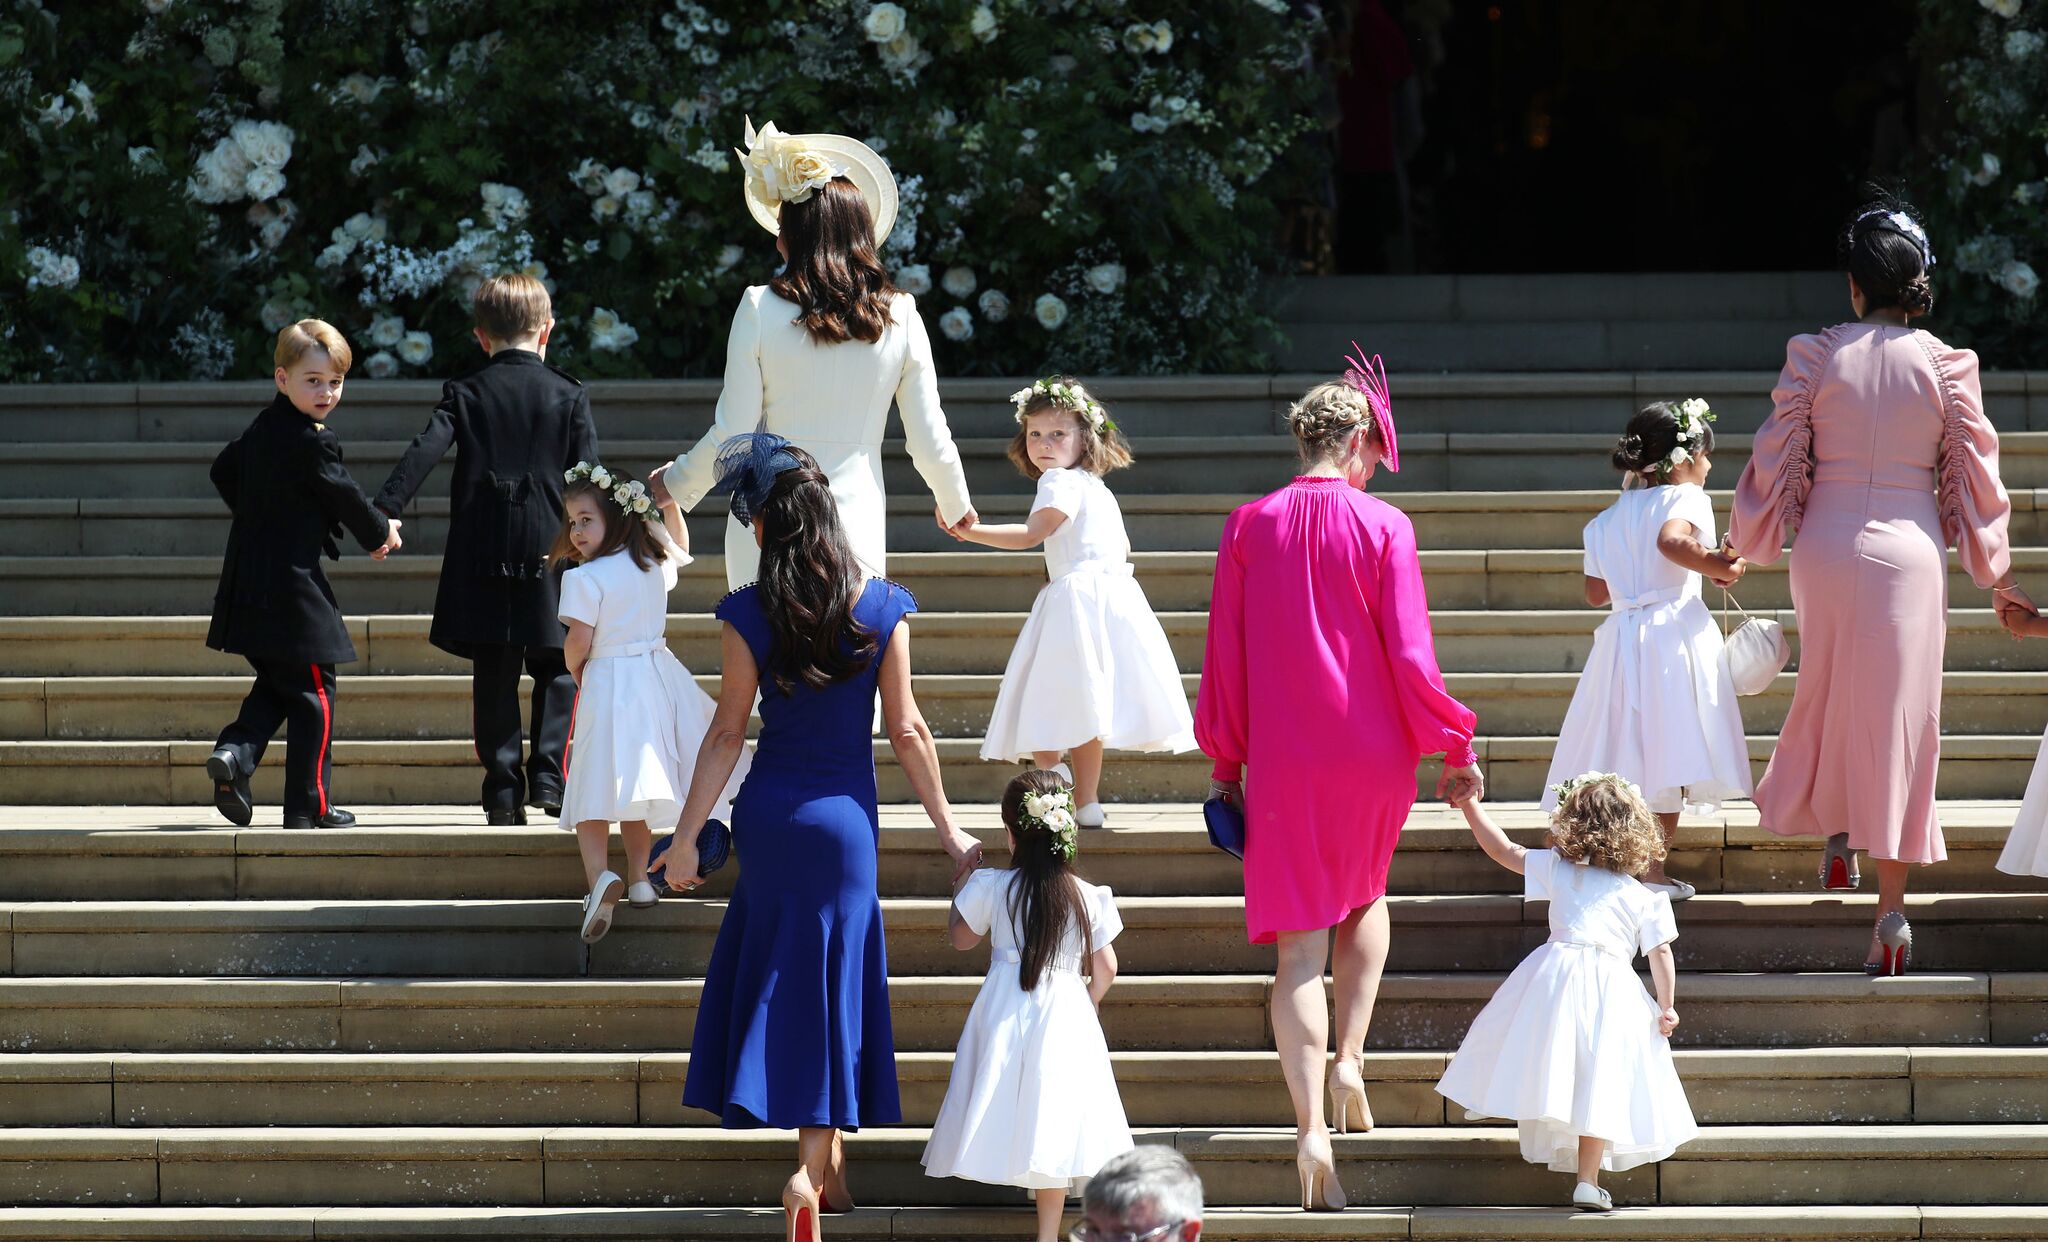 Les enfants du Prince William et de Kate Middleton arrivant au mariage du Prince Harry et Meghan Markle | Getty Images